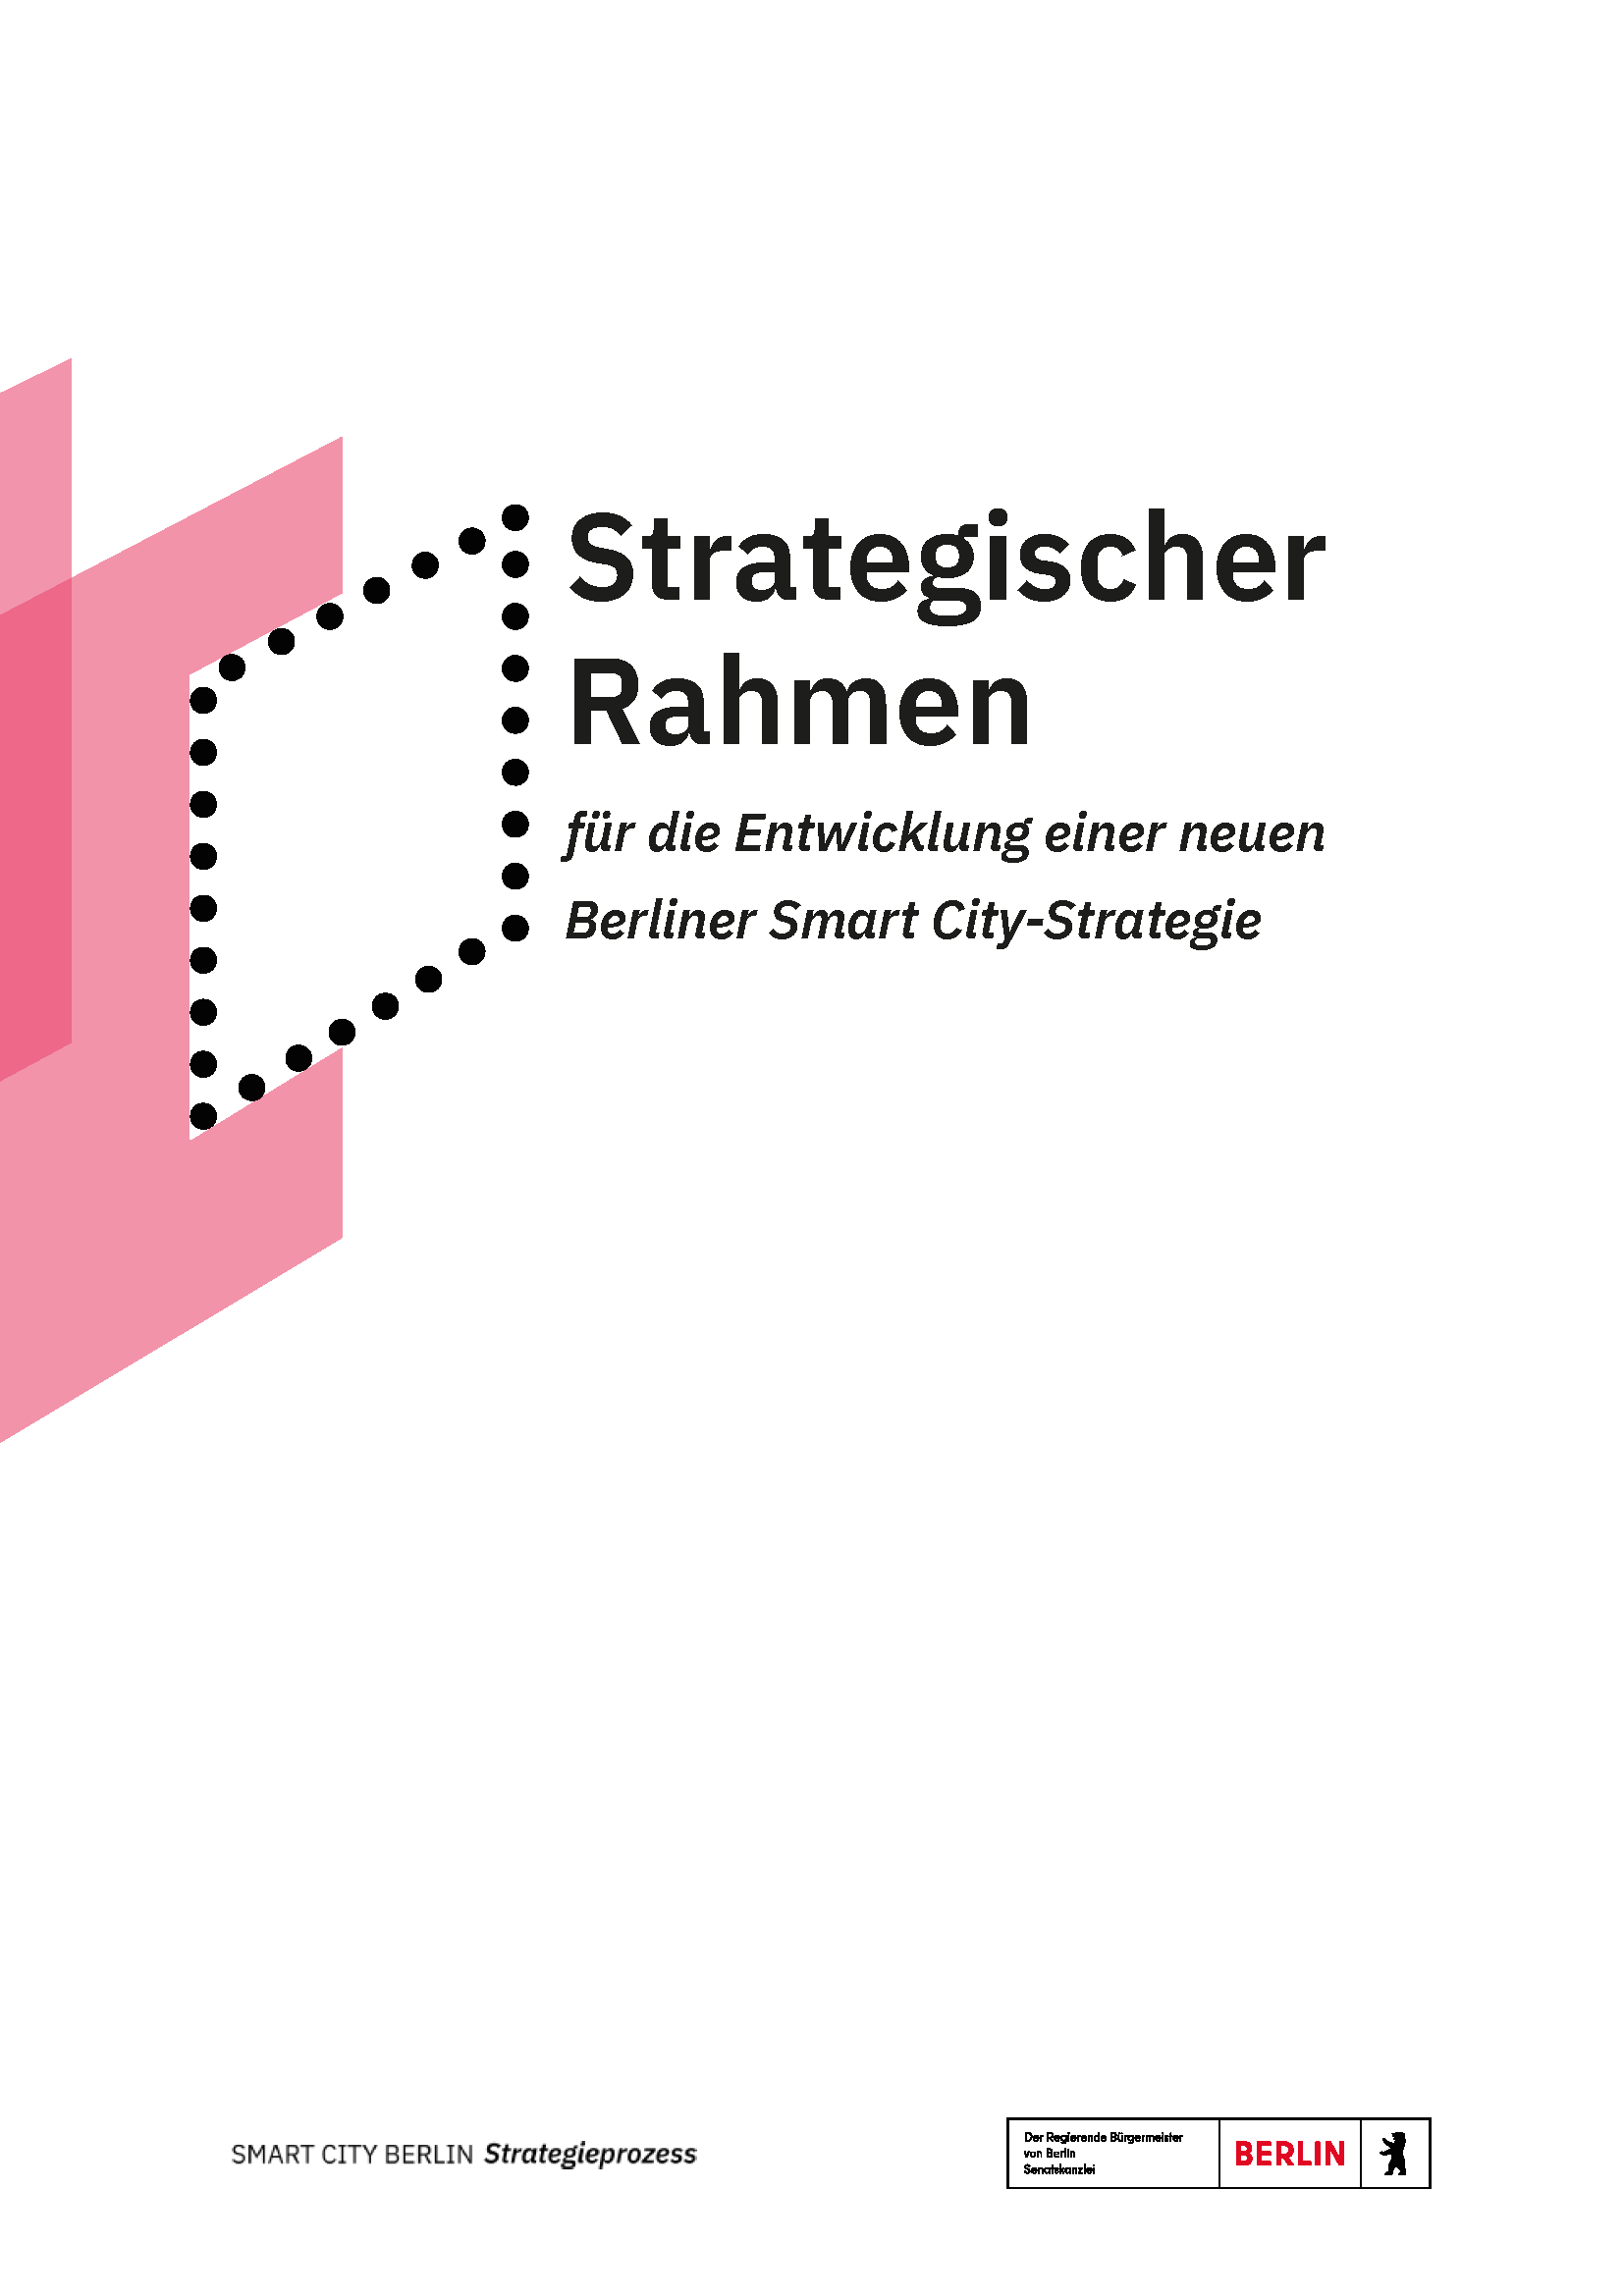 Technologiestiftung Berlin: Strategischer Rhamen für die Entwicklung einer neuen Berliner Smart City-Strategie